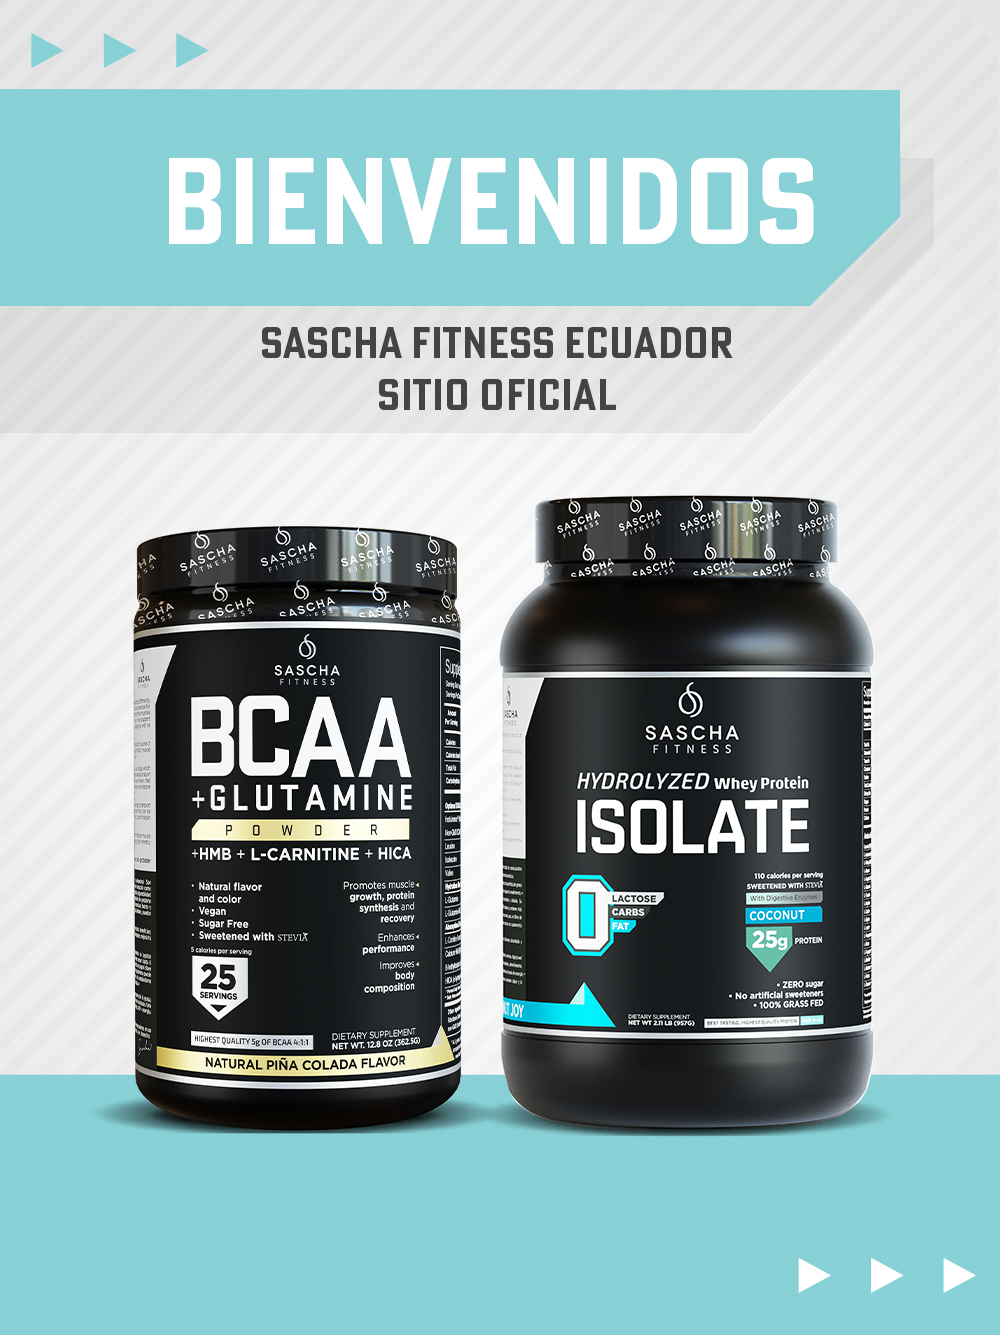 Sascha Fitness Ecuador